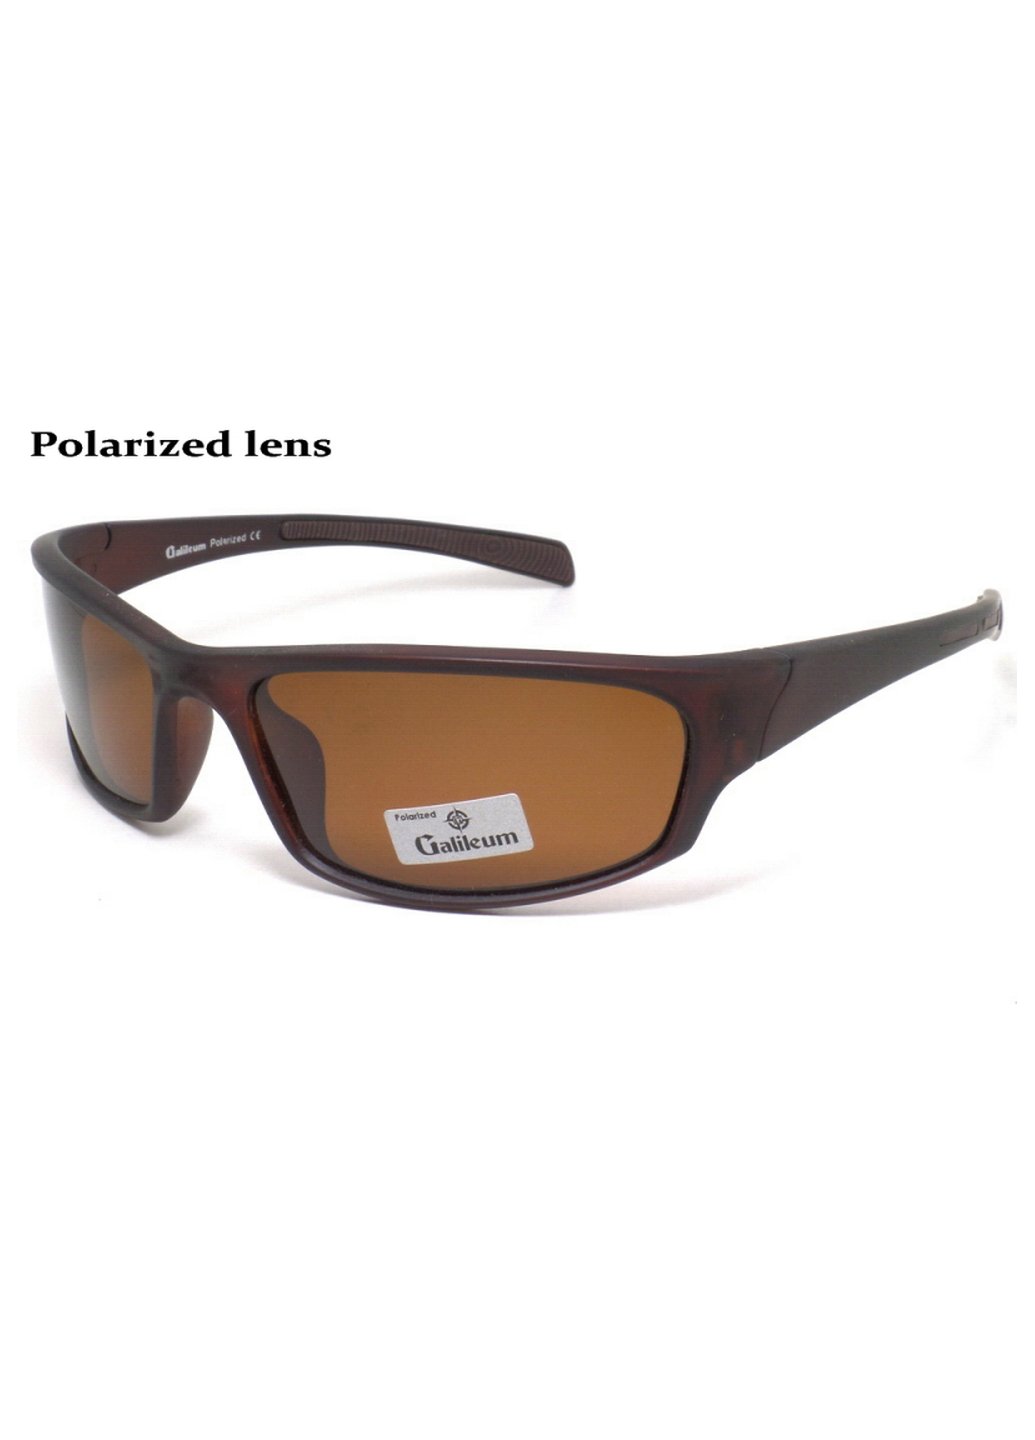 Купить Спортивные очки с поляризацией Galileum 125012 в интернет-магазине